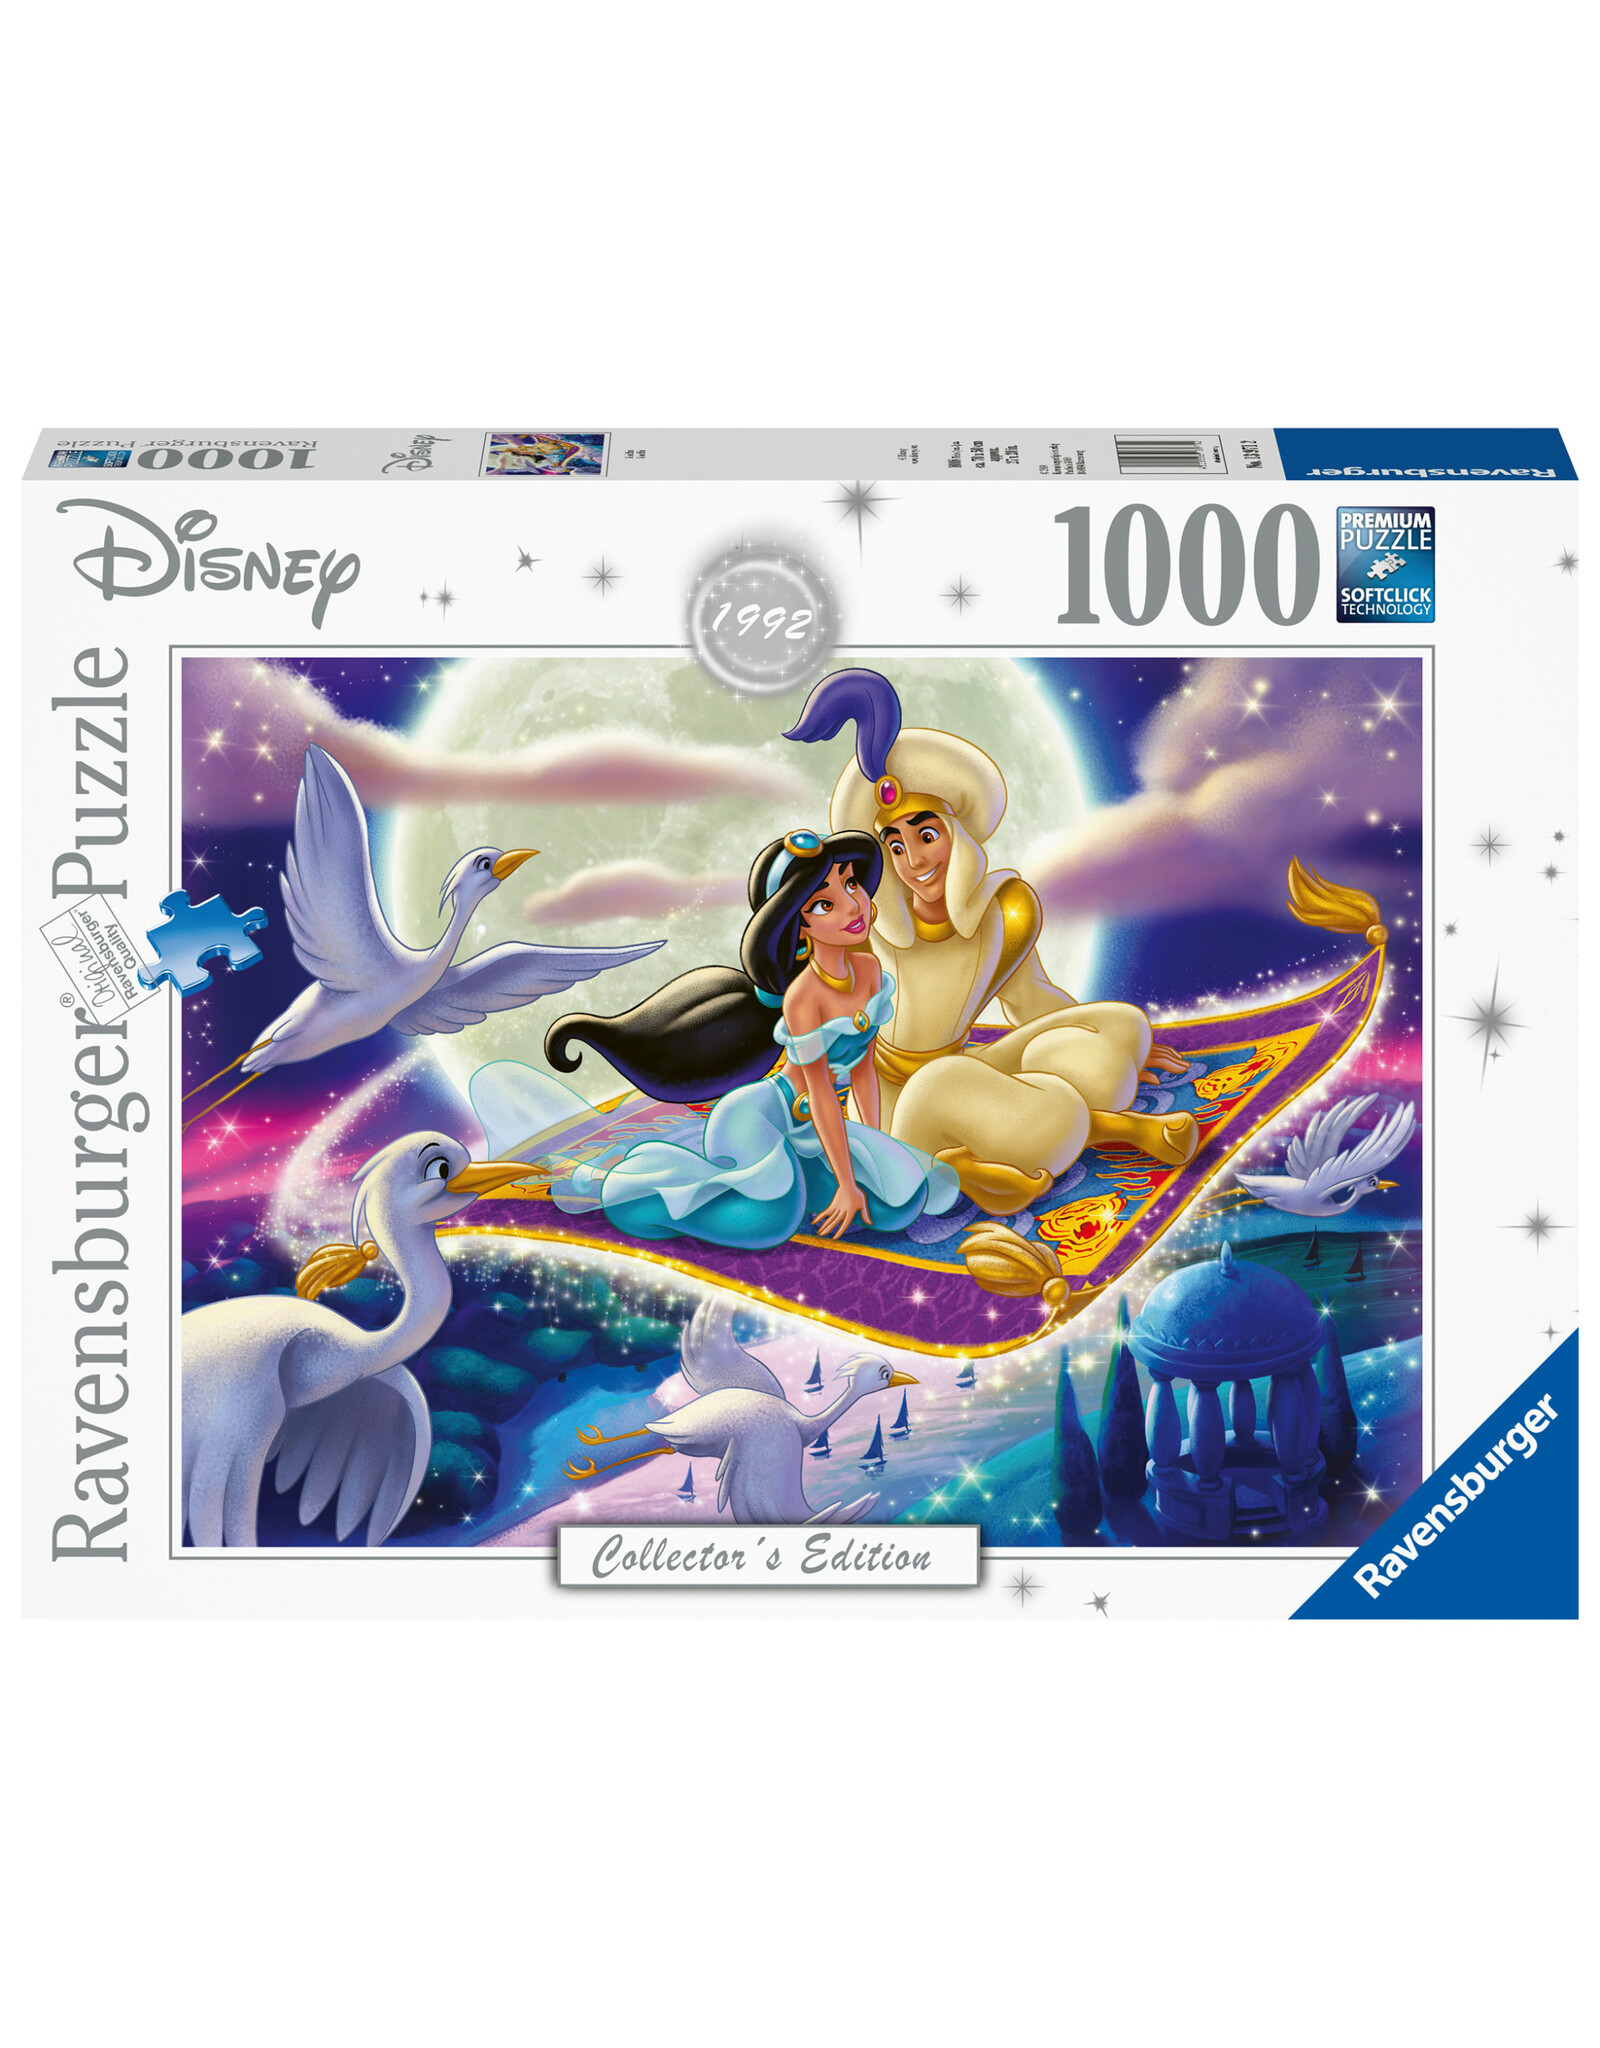 Aladdin 1000 pc Puzzle